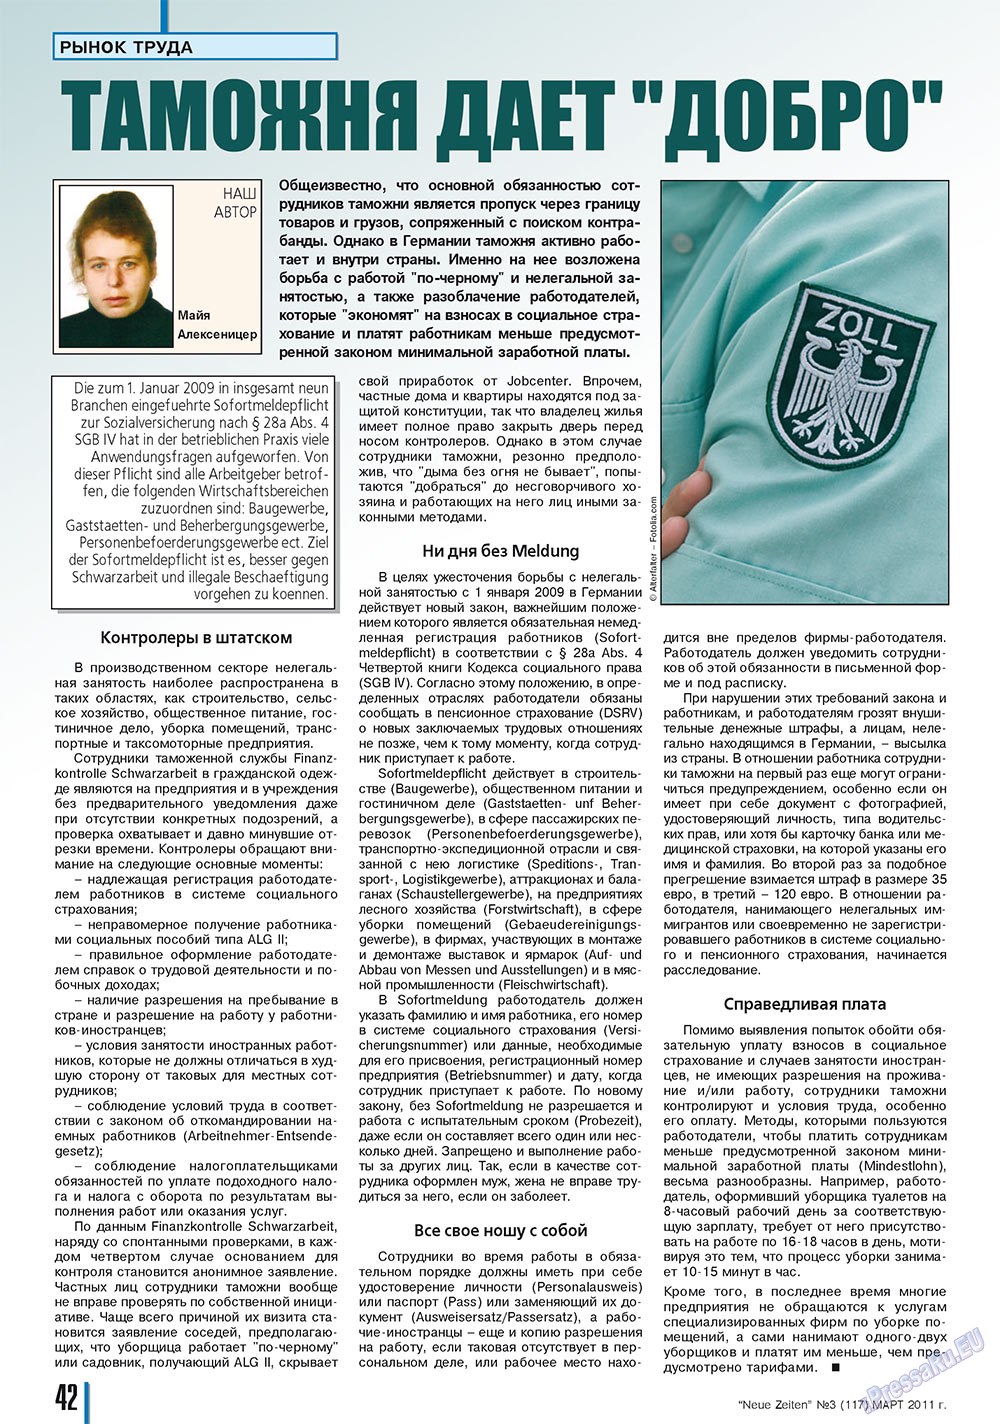 Neue Zeiten, журнал. 2011 №3 стр.42